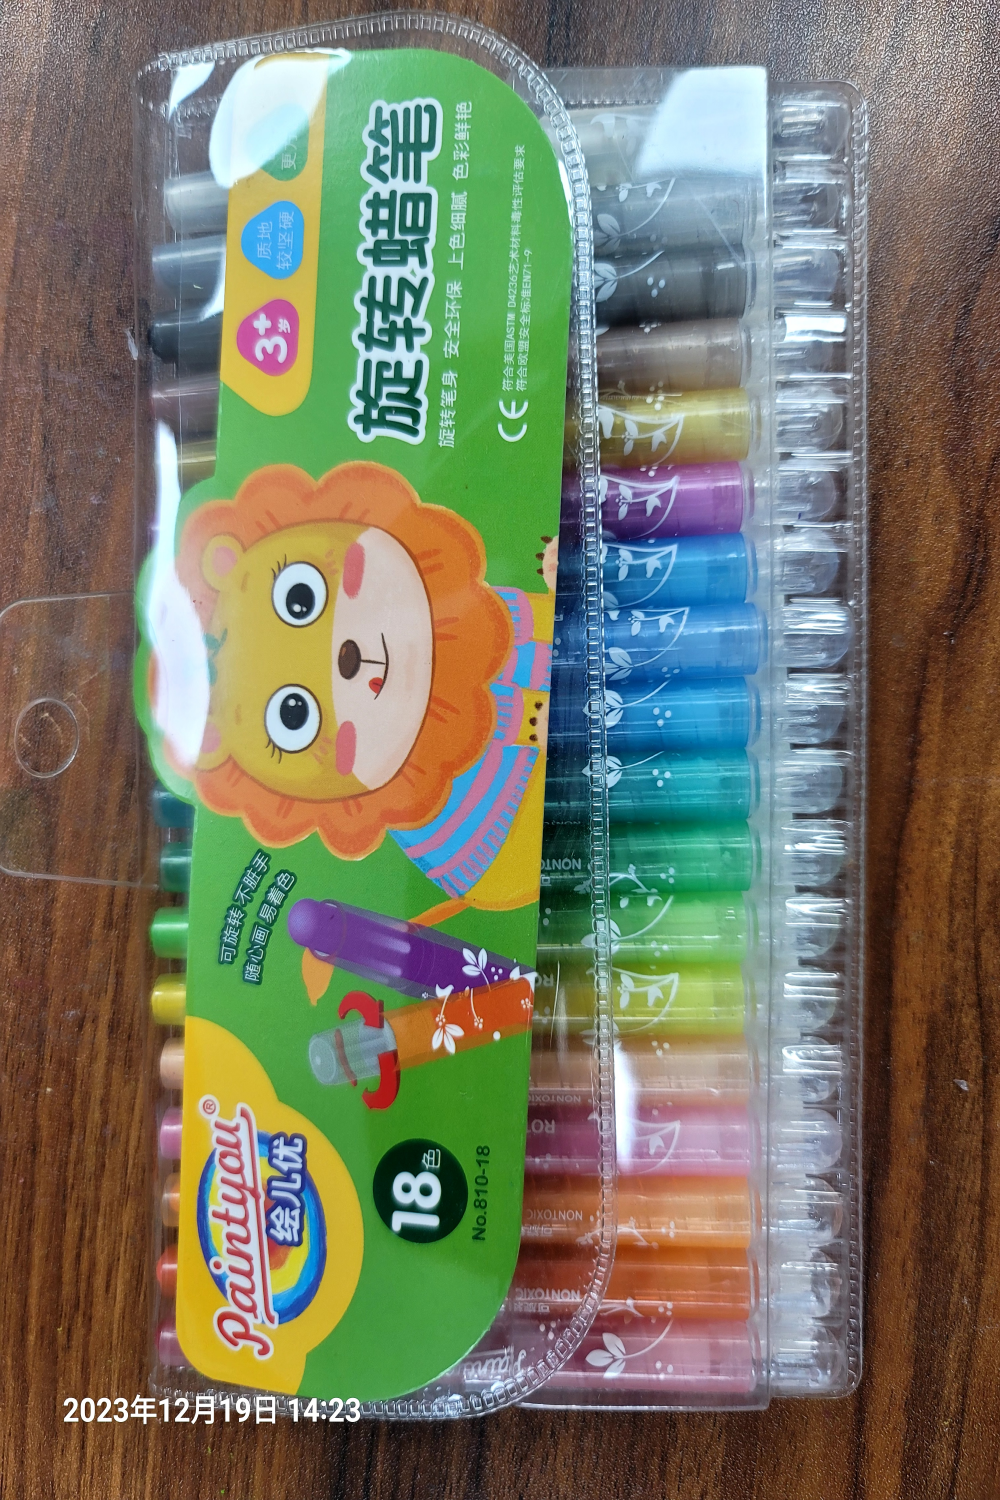 绘儿优旋转蜡笔不脏手着色12色蜡笔老师推荐18色油画棒批发YL022-810-18